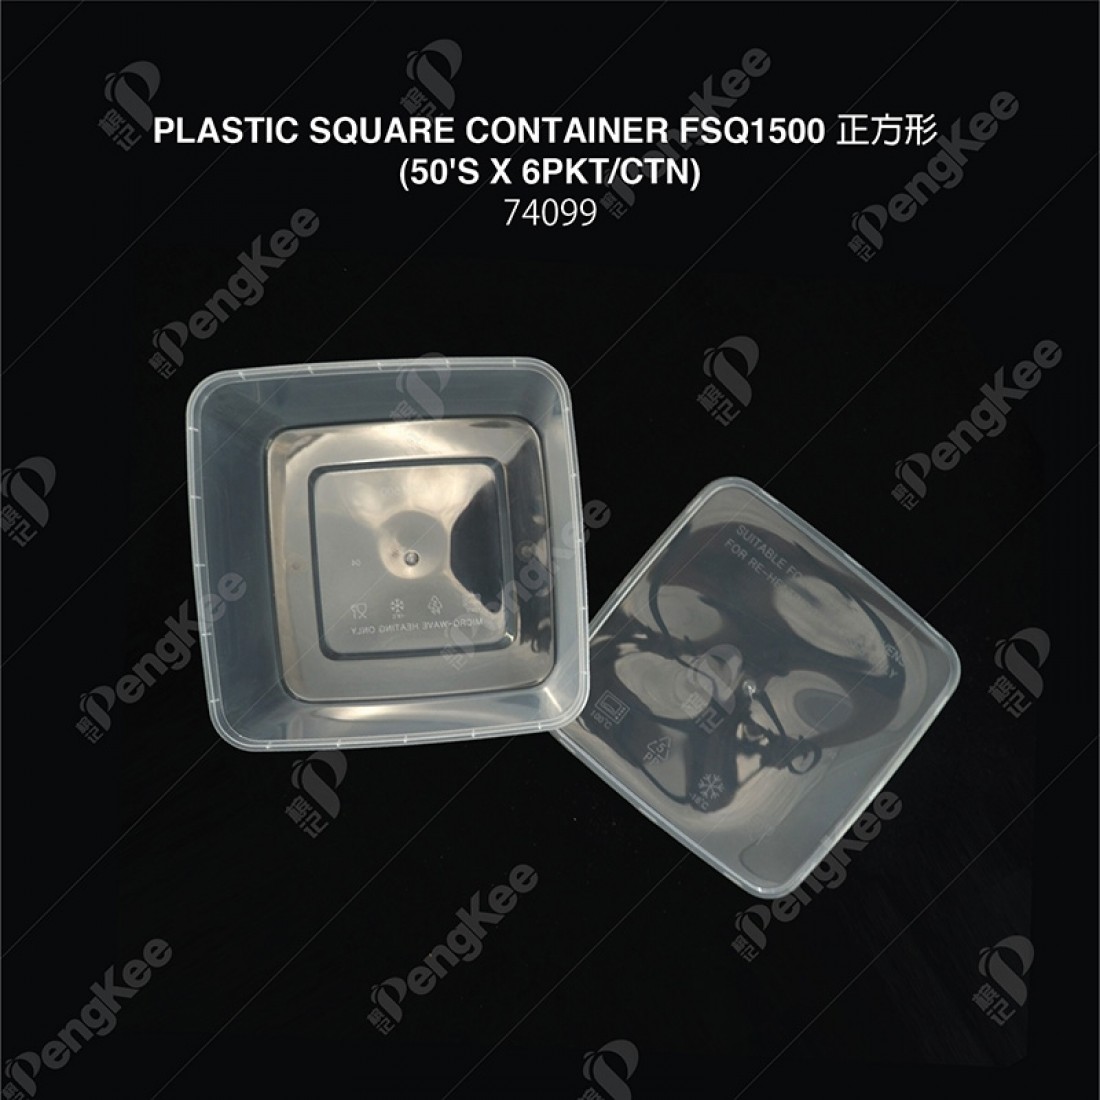 PLASTIC SQUARE CONTAINER FSQ1500 (50'S)